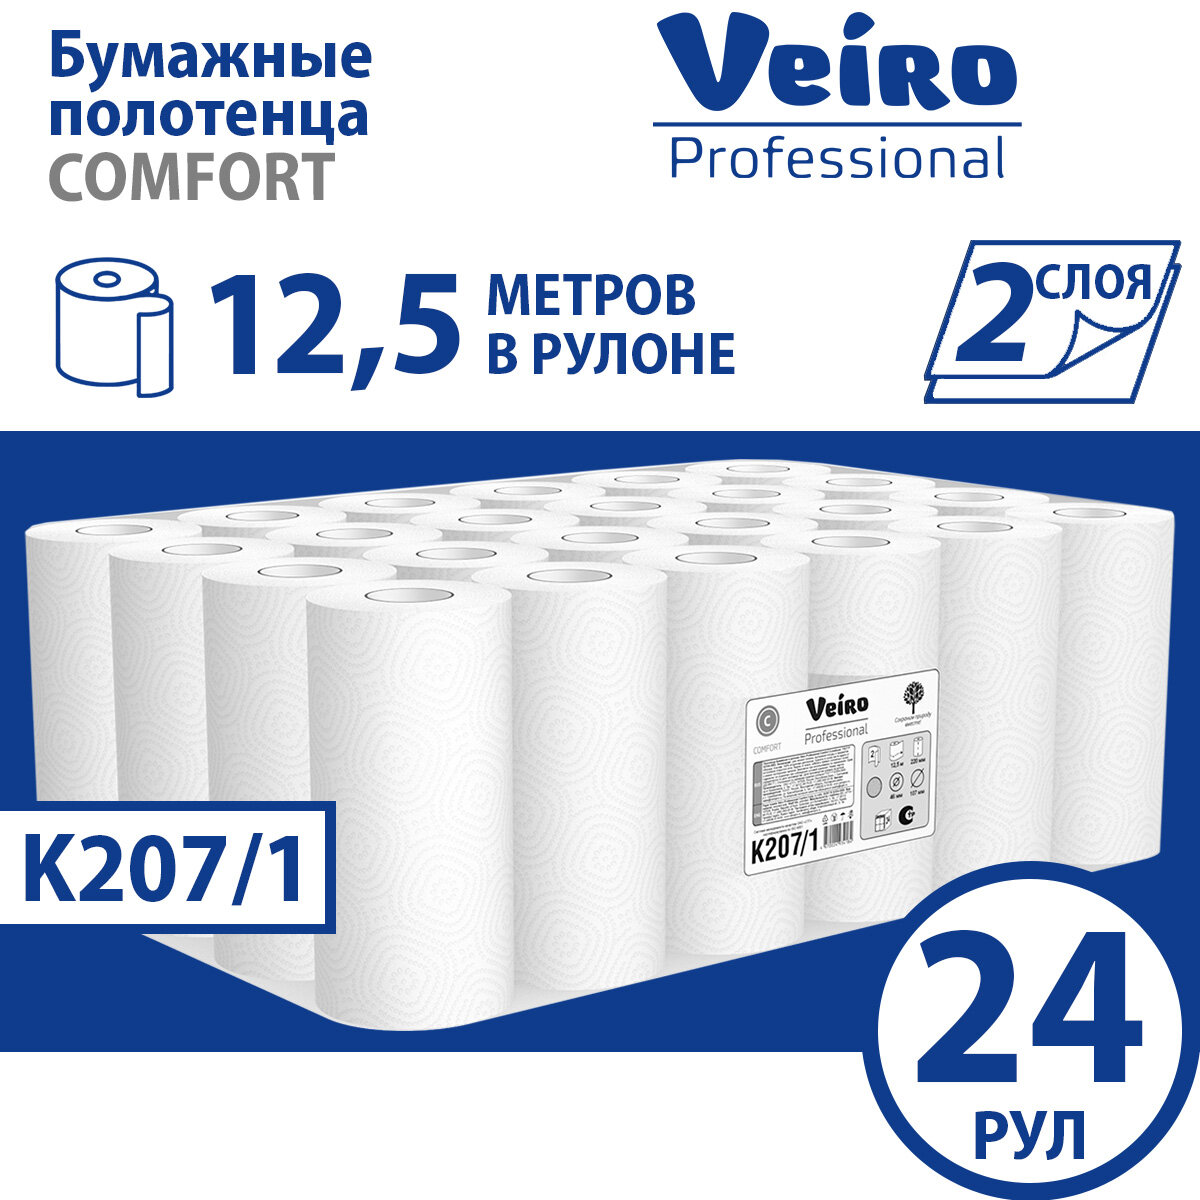 Полотенца бумажные рулонные Veiro Professional Comfort K207/1 двухслойные, 24 рулона по 12,5 метров